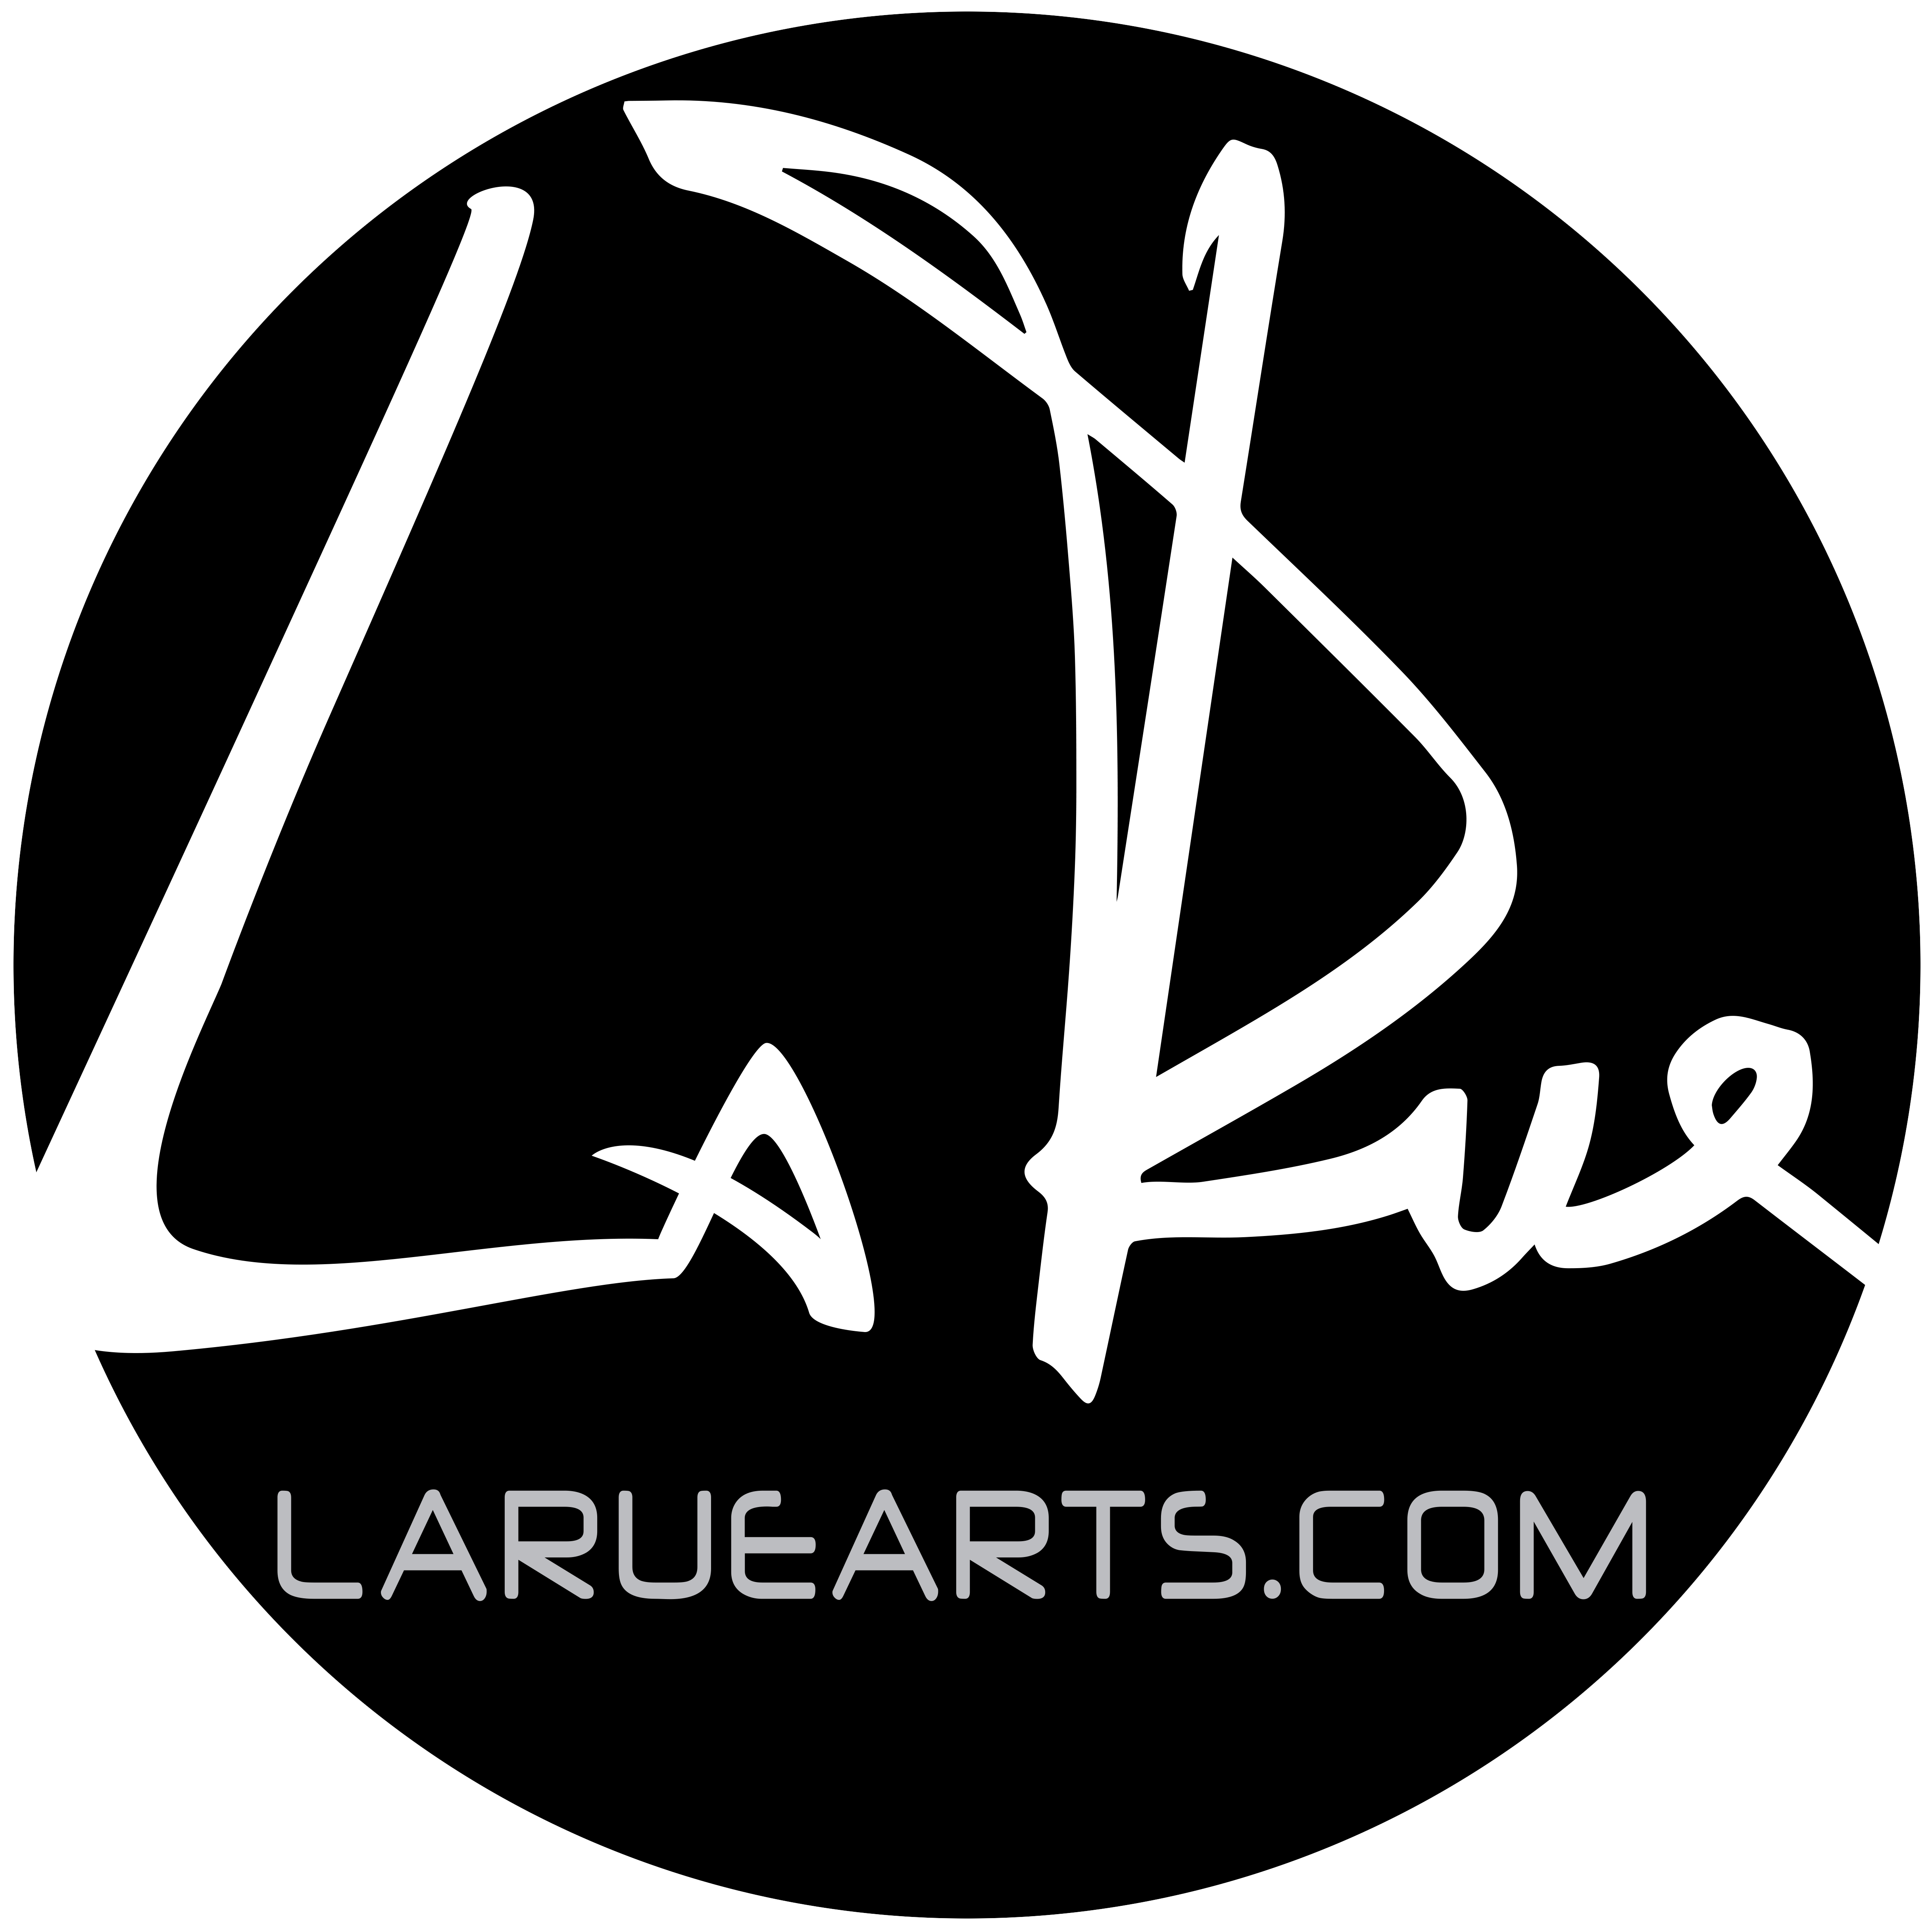 Doug LaRue - Website